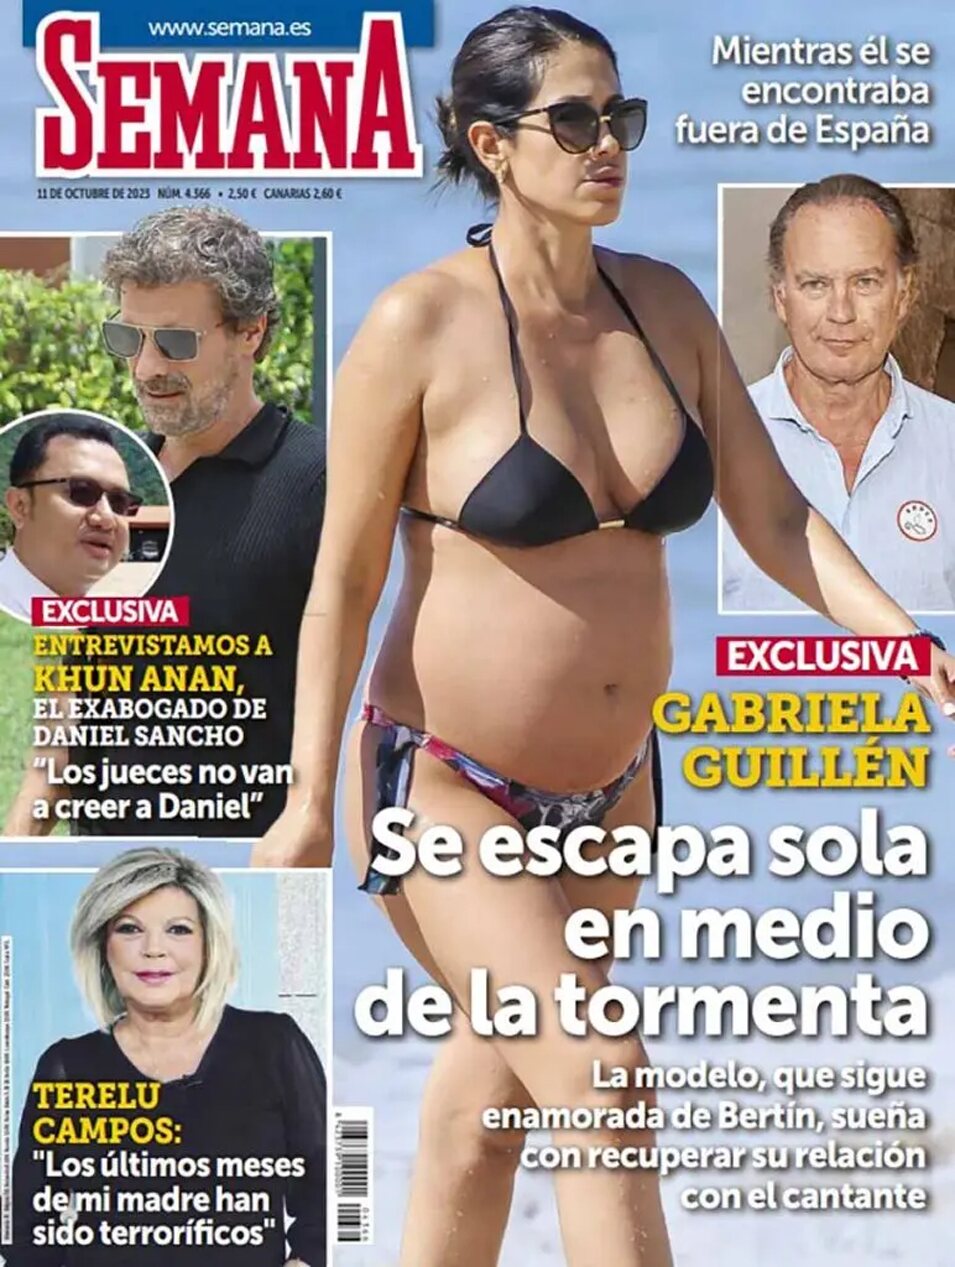 La portada de la revista Semana que habría pactado Gabriela Guillén